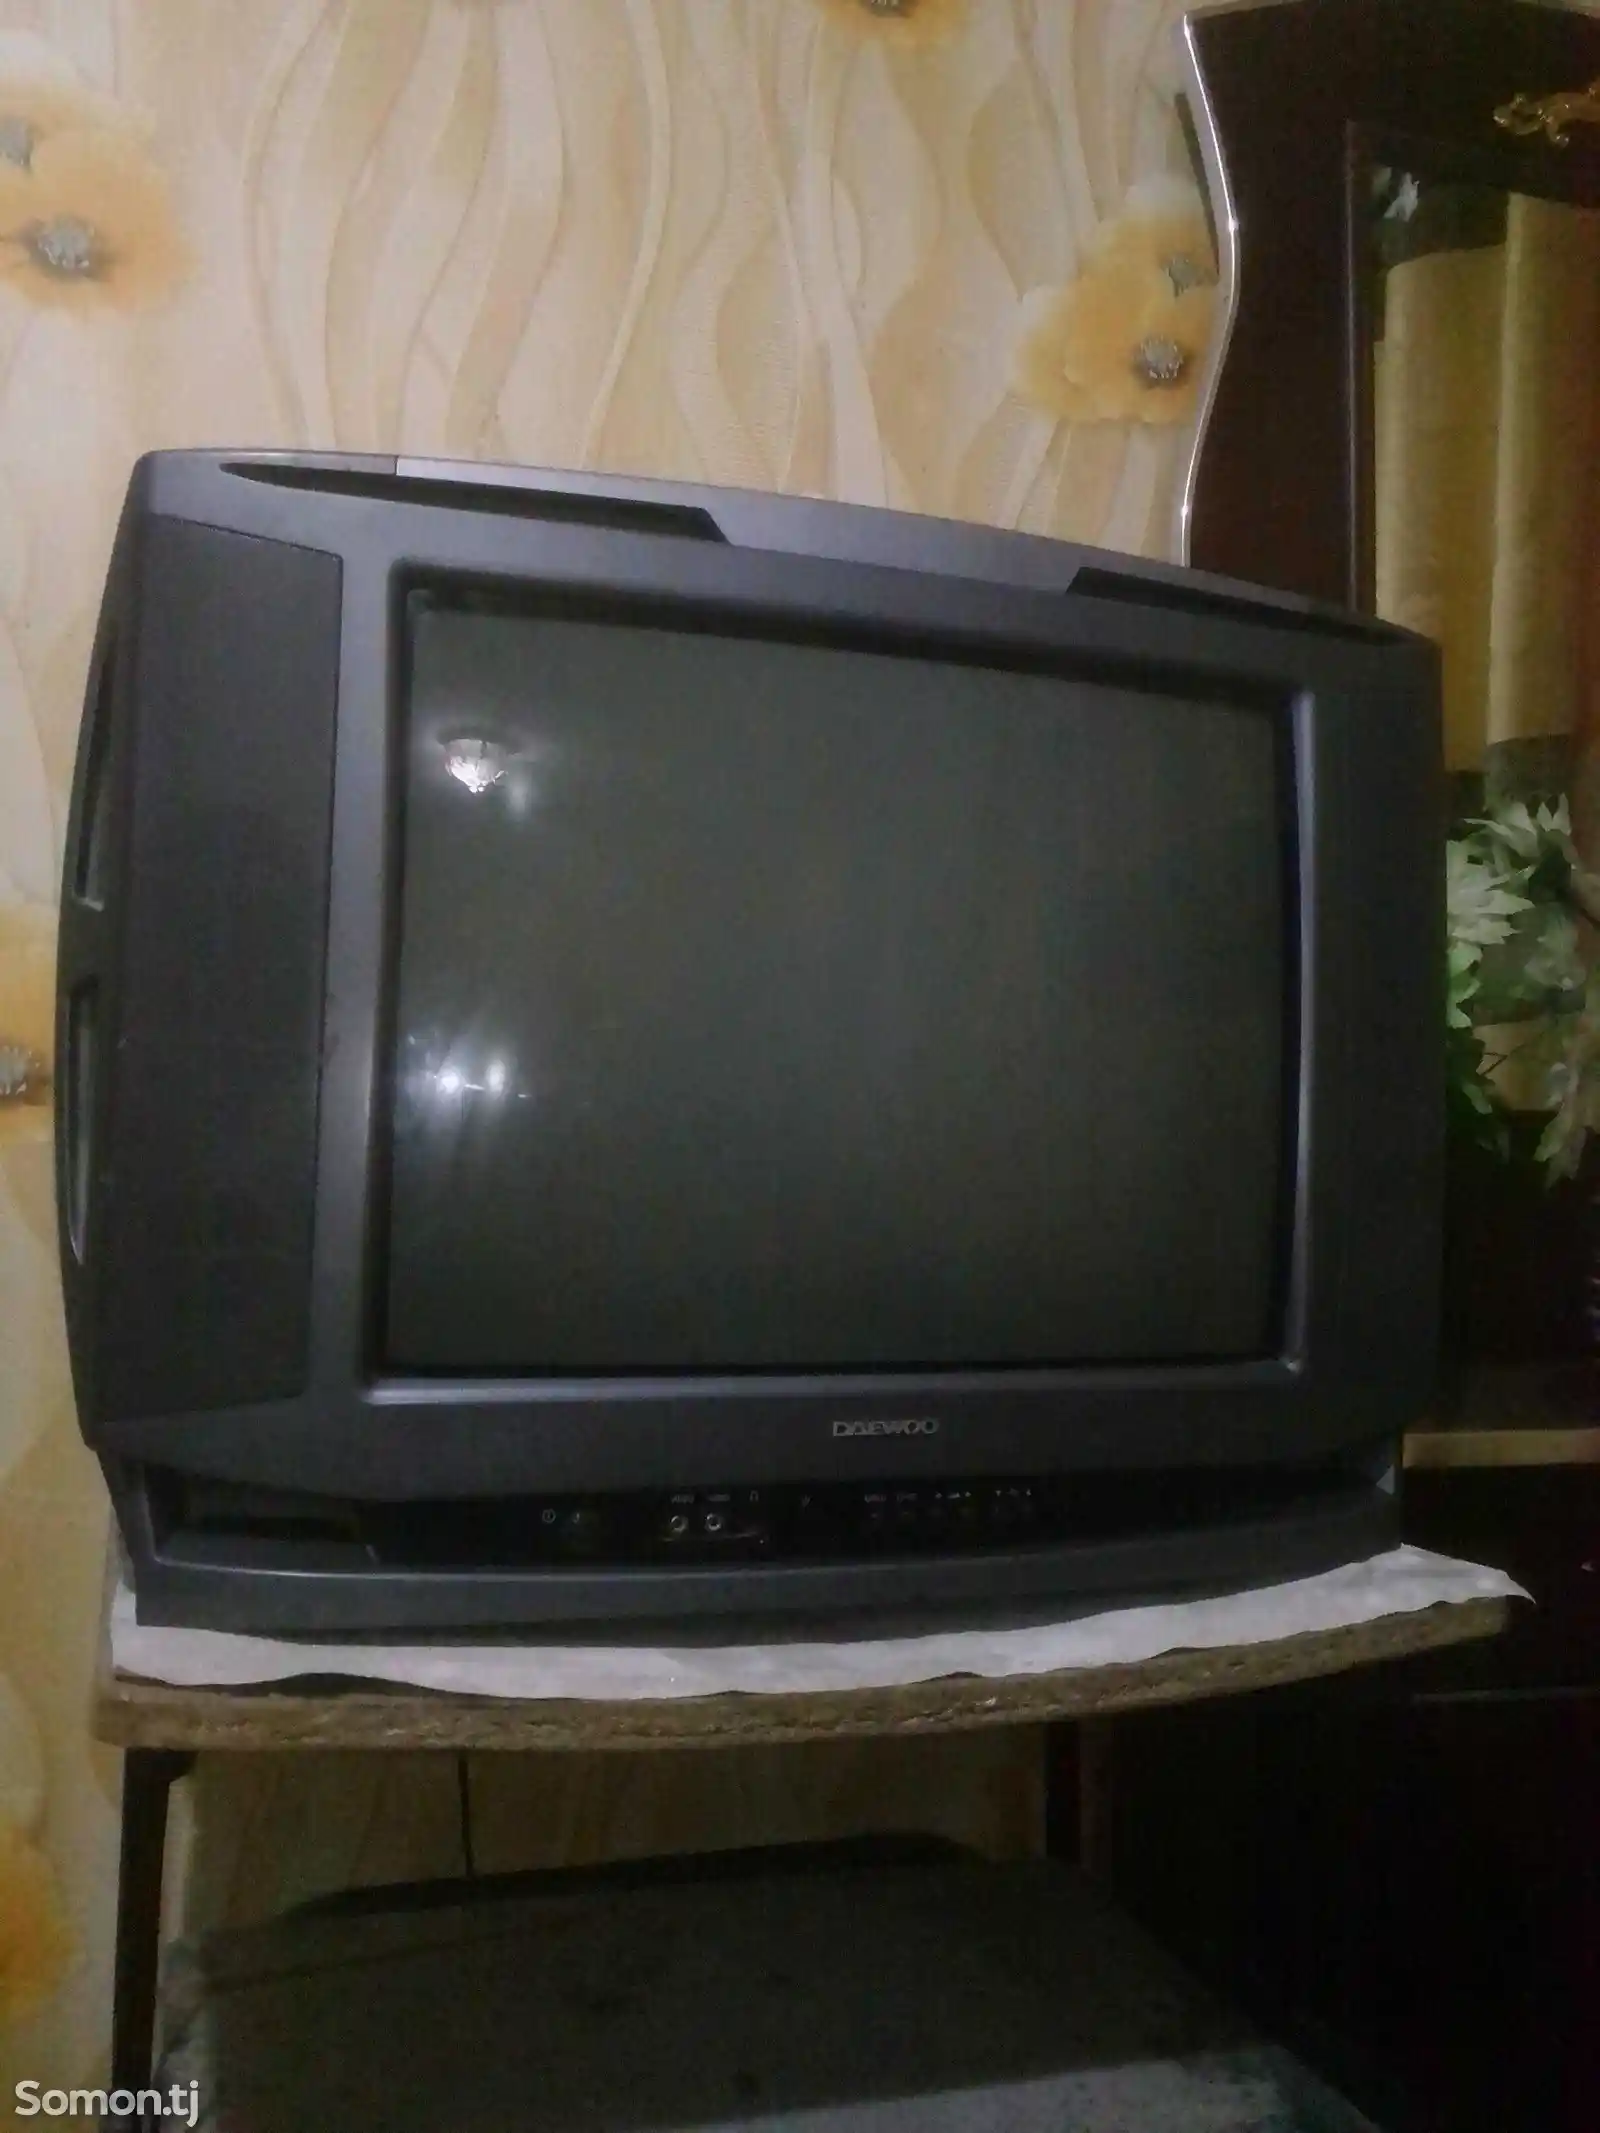 Телевизор Daewoo цветной